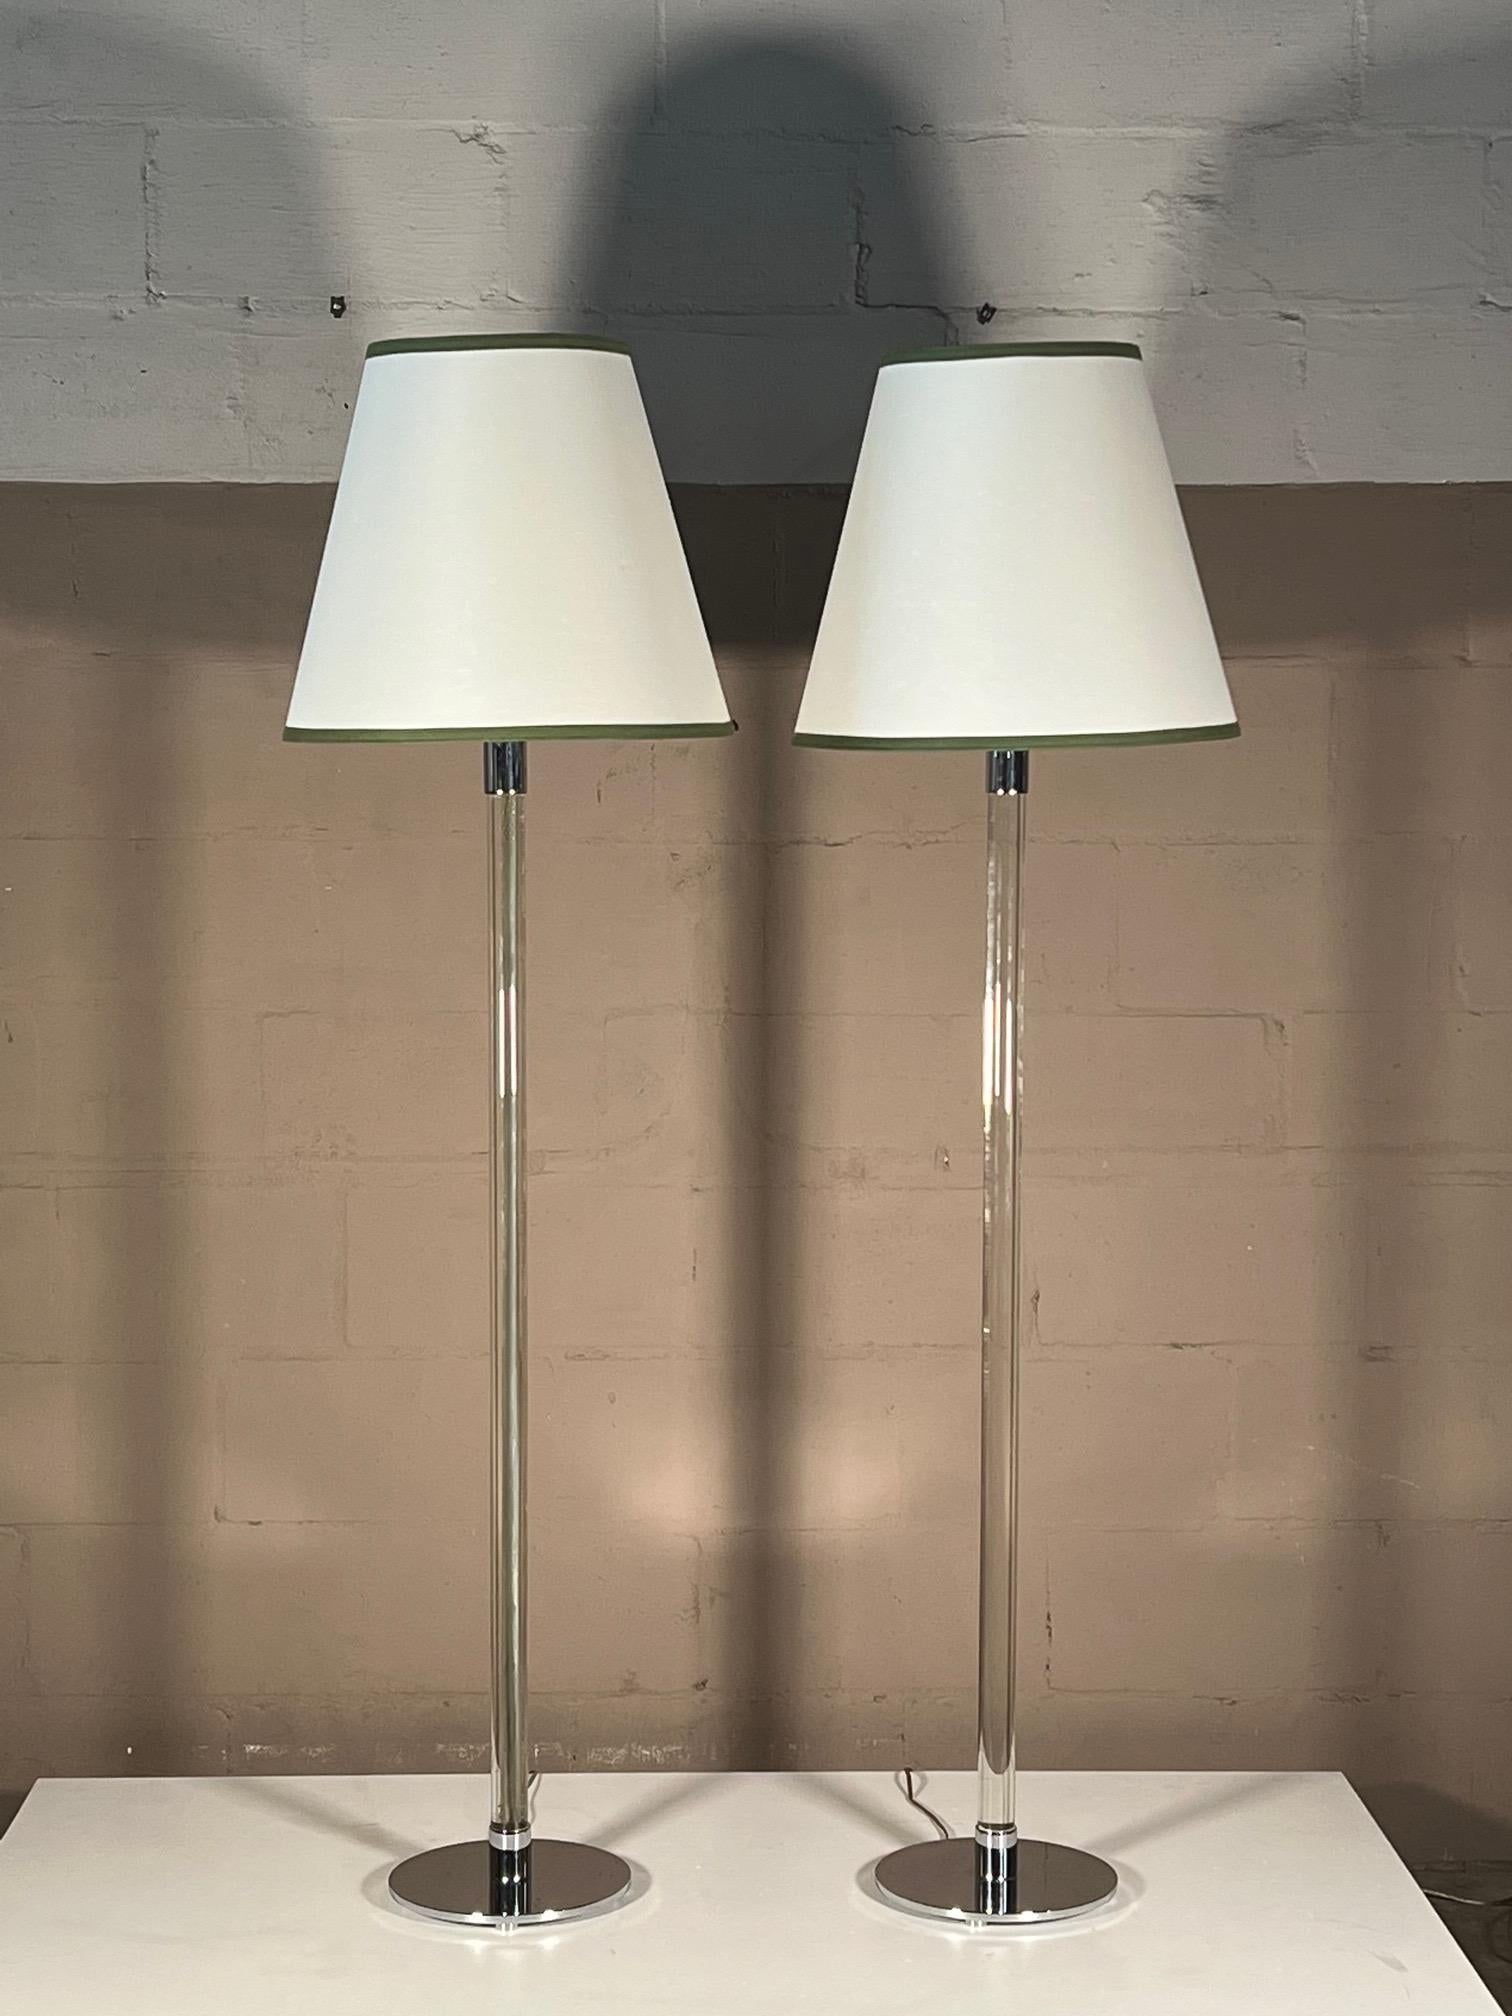 Paire d'élégants lampadaires à tige de verre de Hansen Lighting, NYC - chaque base est estampillée. Acier chromé, chaque lampe avec trois douilles et hauteur réglable pour les abat-jours.
